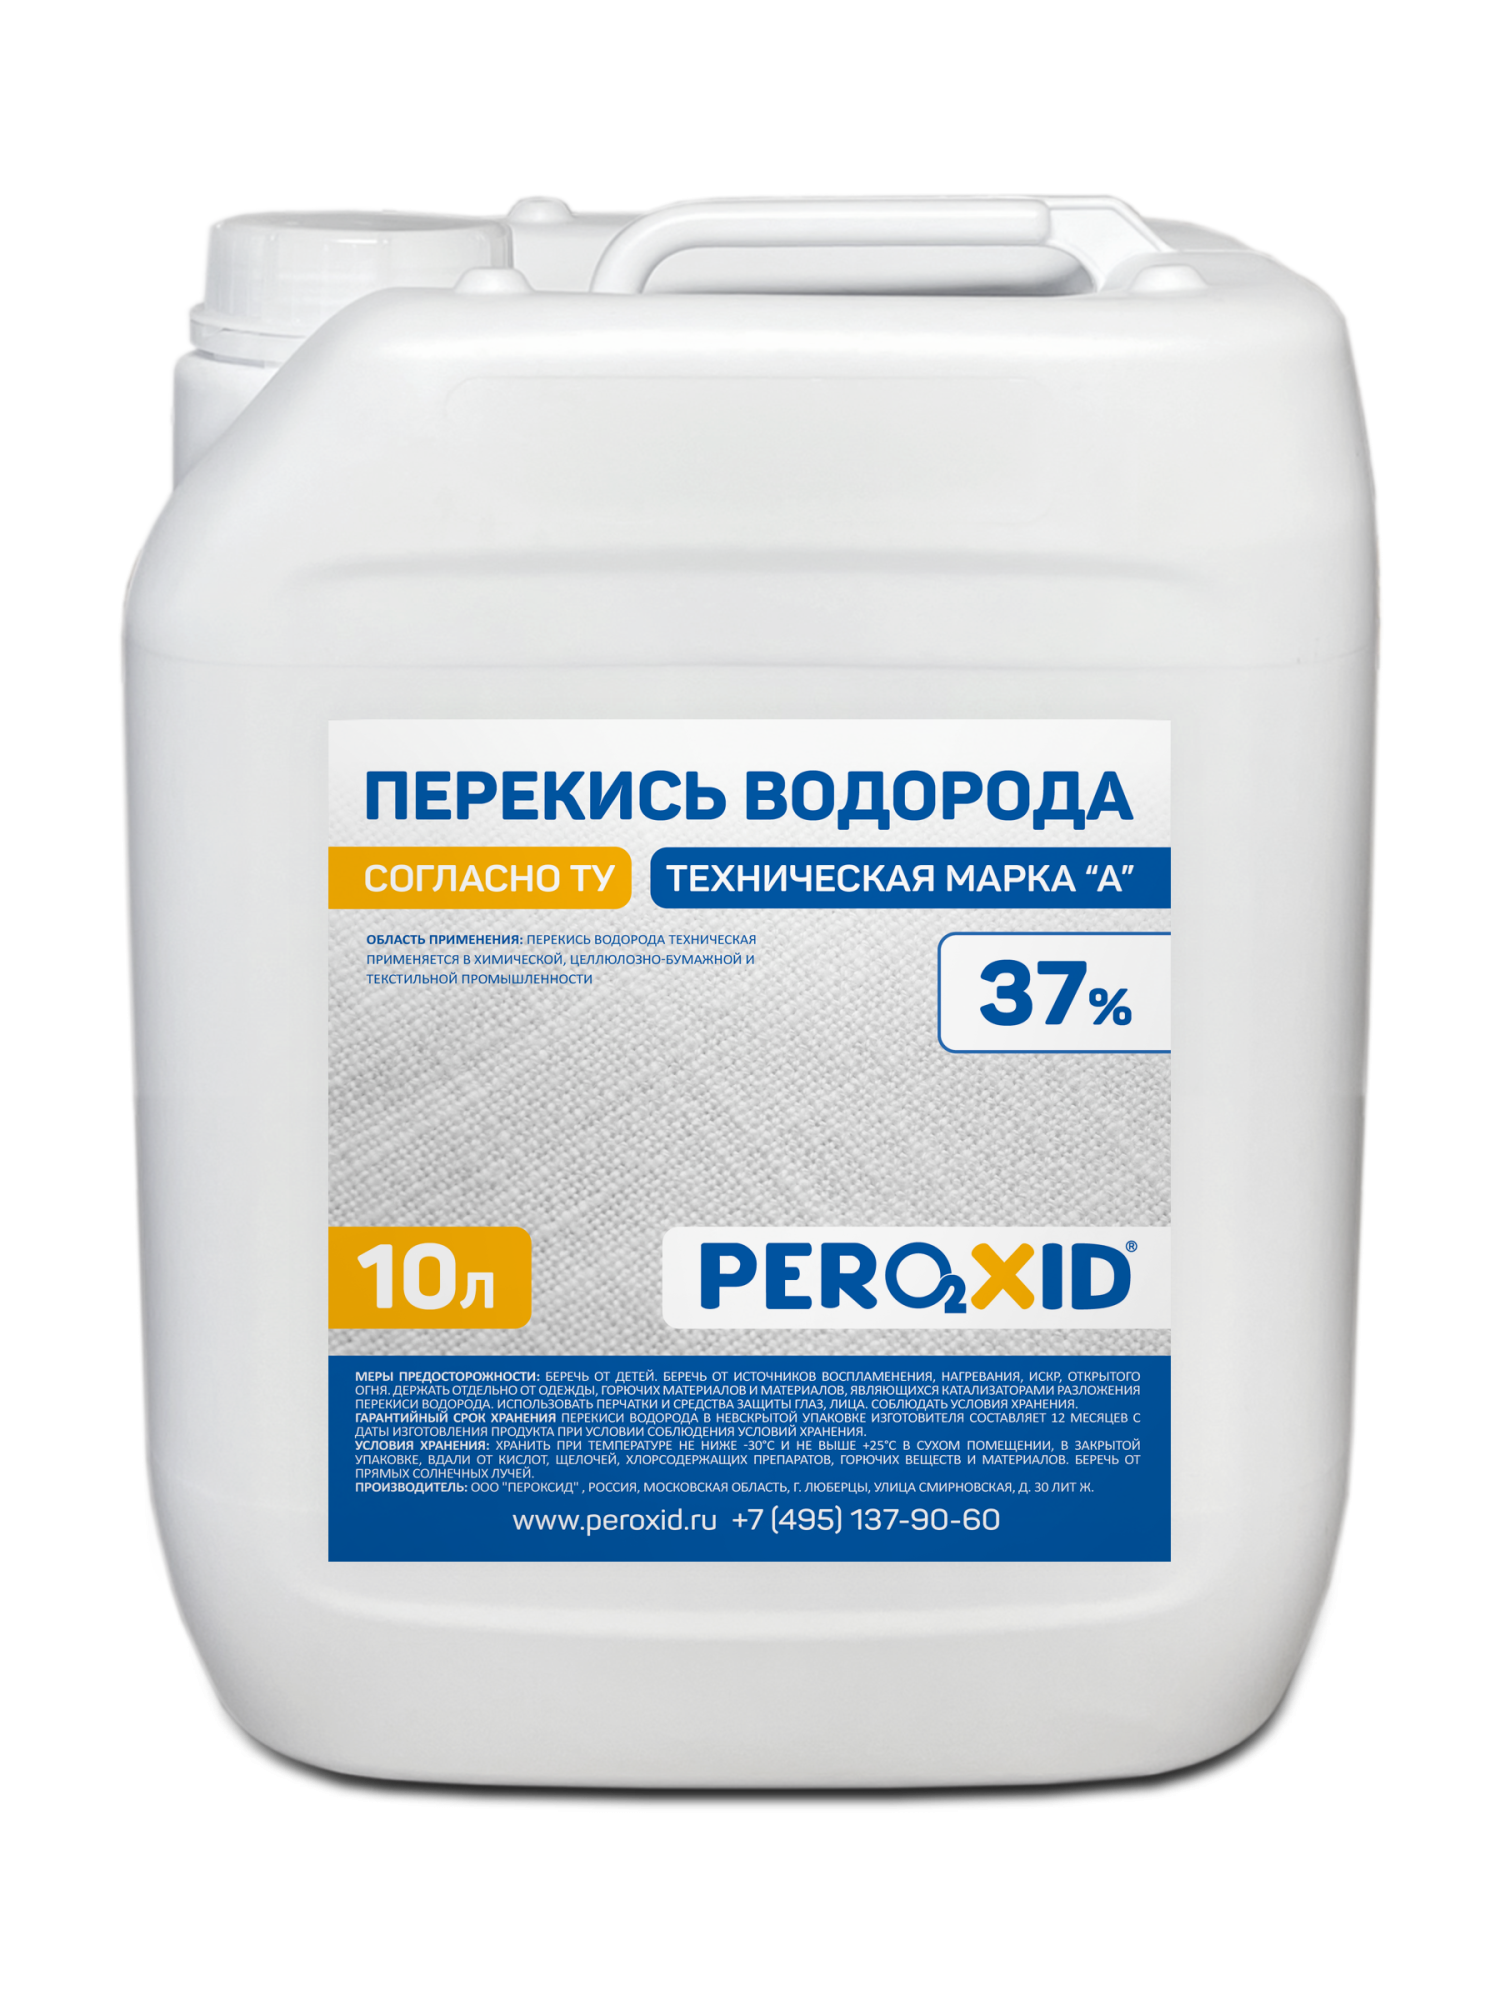 Перекись водорода техническая PEROXID 37% марка А ТУ 2123-002-25665344-2008 10 л/12 кг